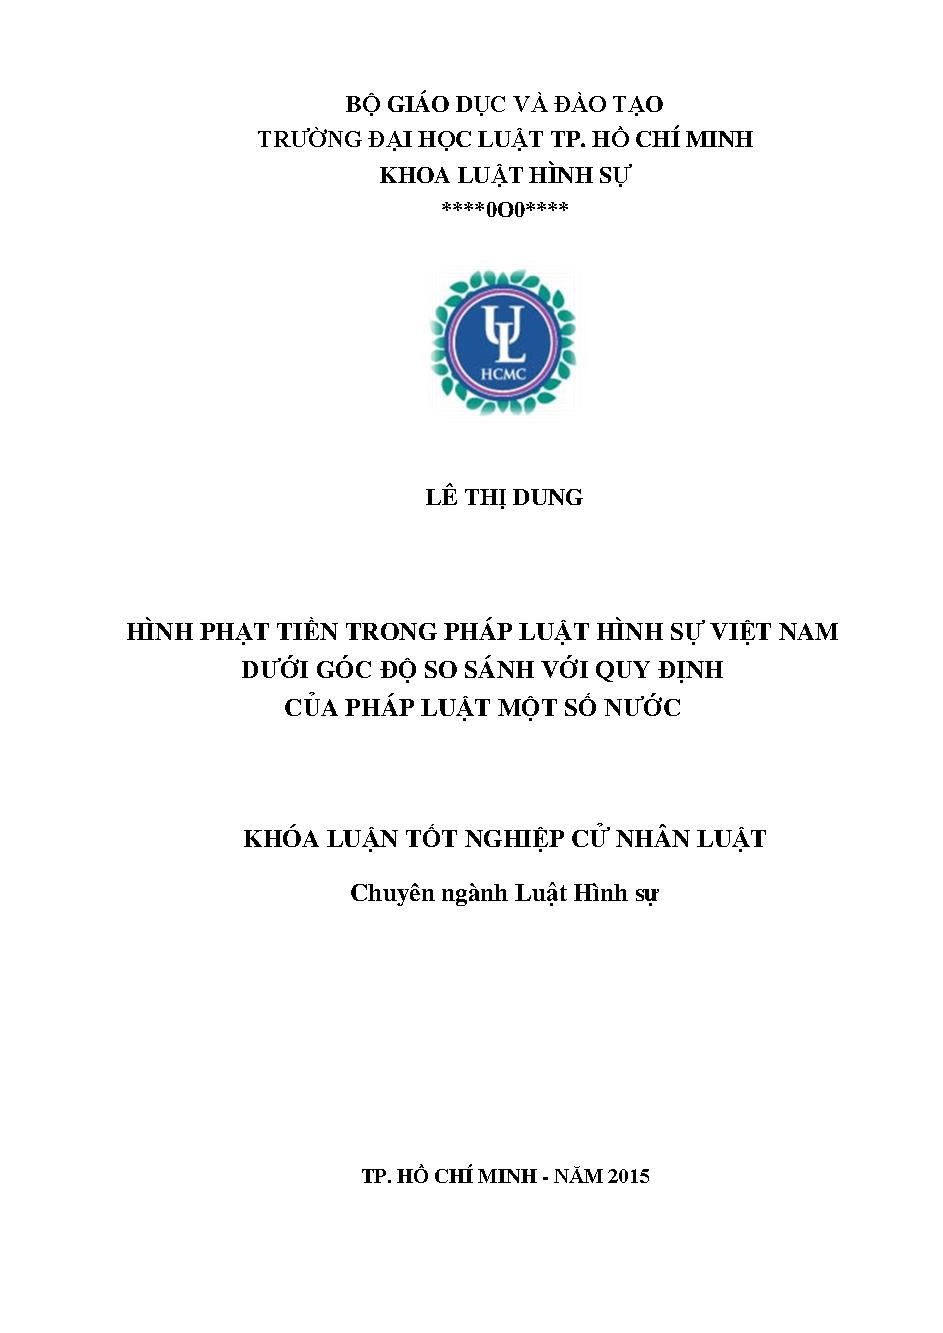 Hình phạt tiền trong pháp luật hình sự Việt Nam dưới góc độ so sánh với quy định của pháp luật một số nước